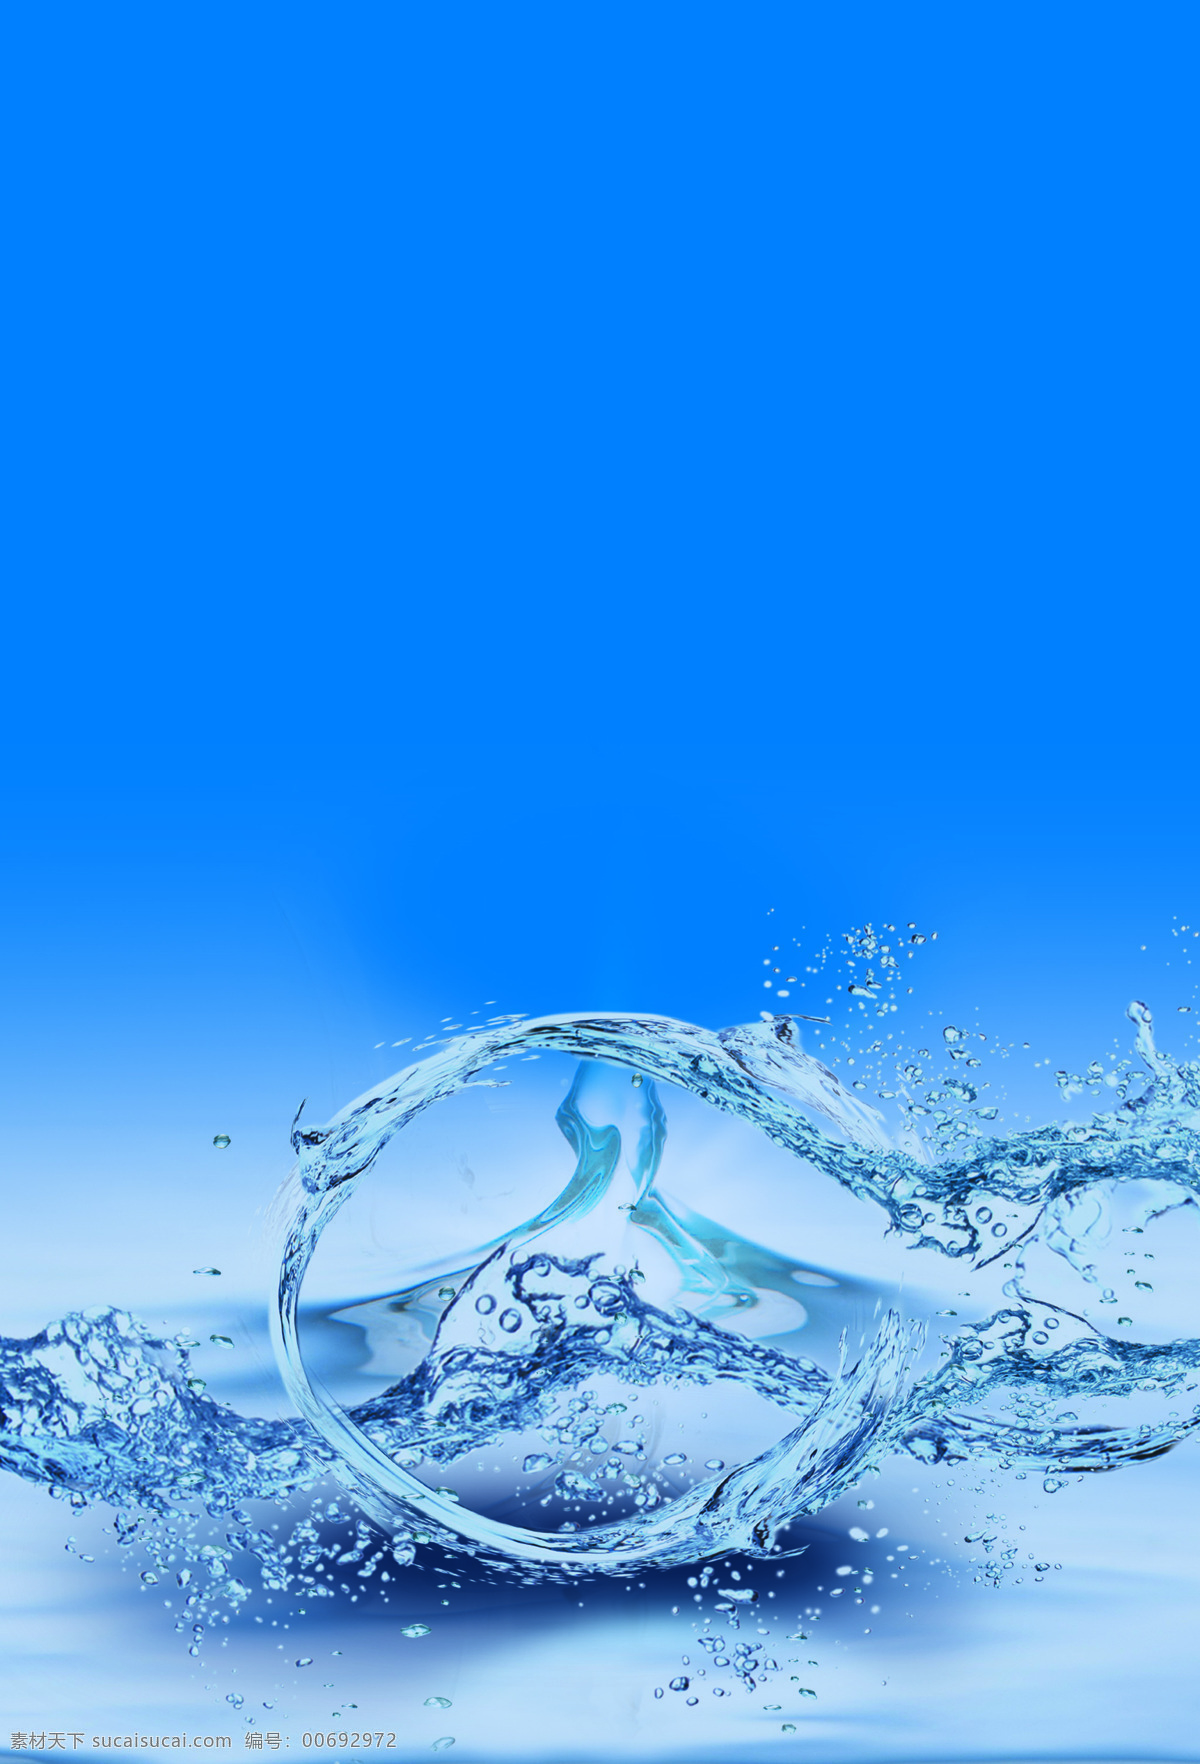 蓝色背景 饮水机背景 送水背景 纯净水背景 桶装水背景 饮水机 送水 纯净水